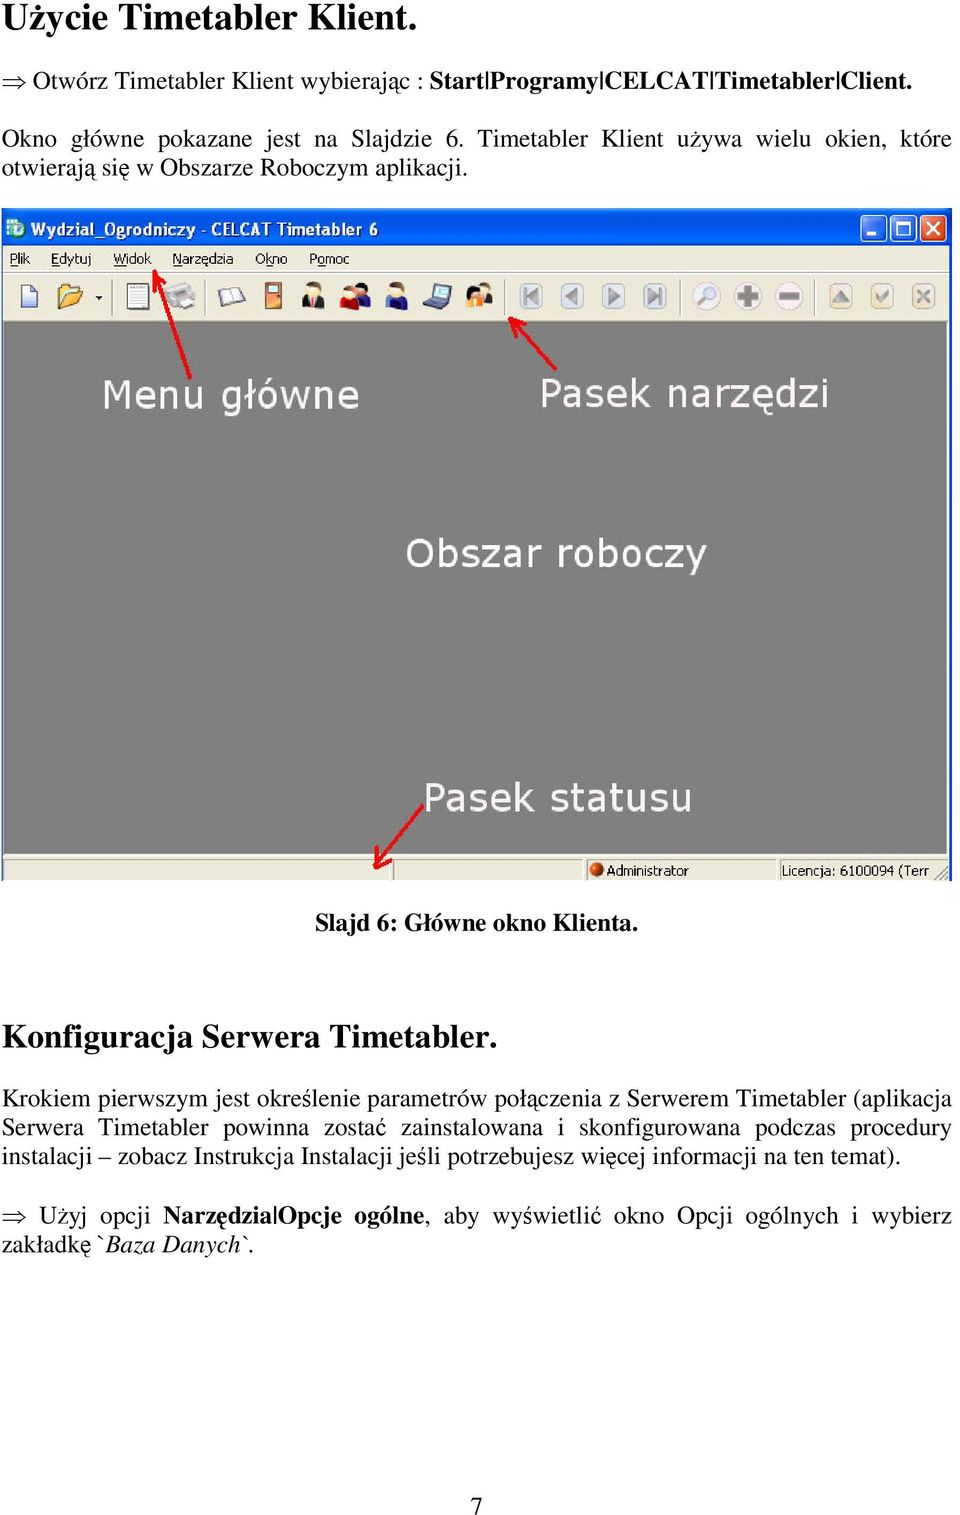 Krokiem pierwszym jest określenie parametrów połączenia z Serwerem Timetabler (aplikacja Serwera Timetabler powinna zostać zainstalowana i skonfigurowana podczas